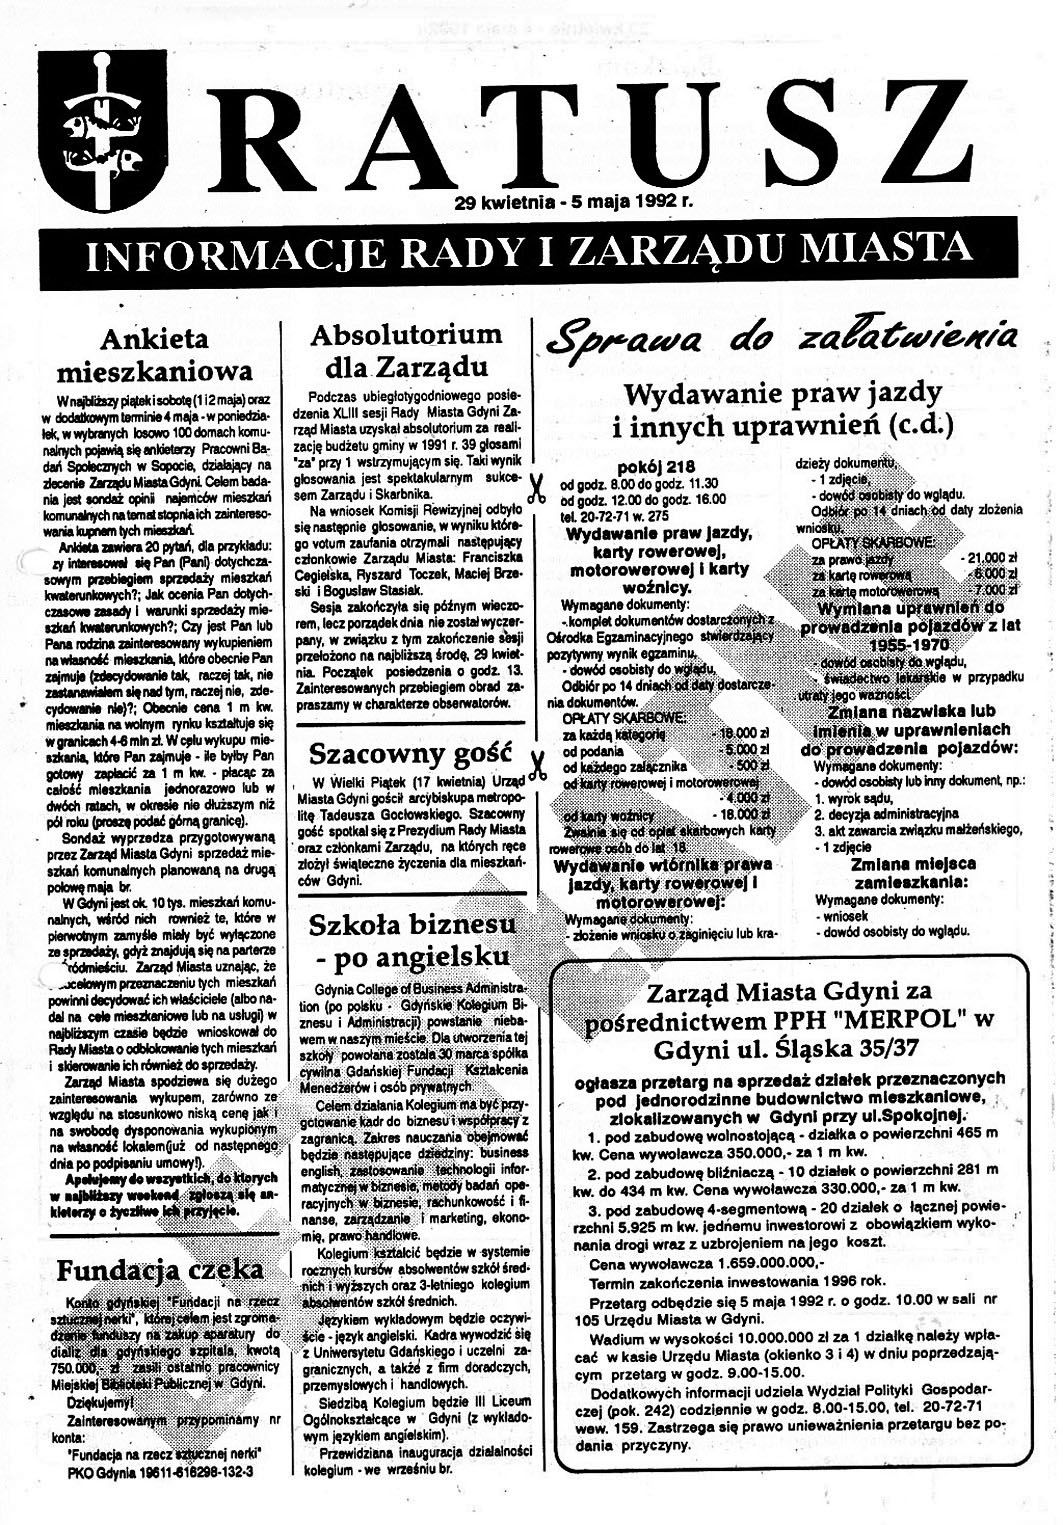 Ratusz. Informacje Rady i Zarządu Miasta. - 1992,